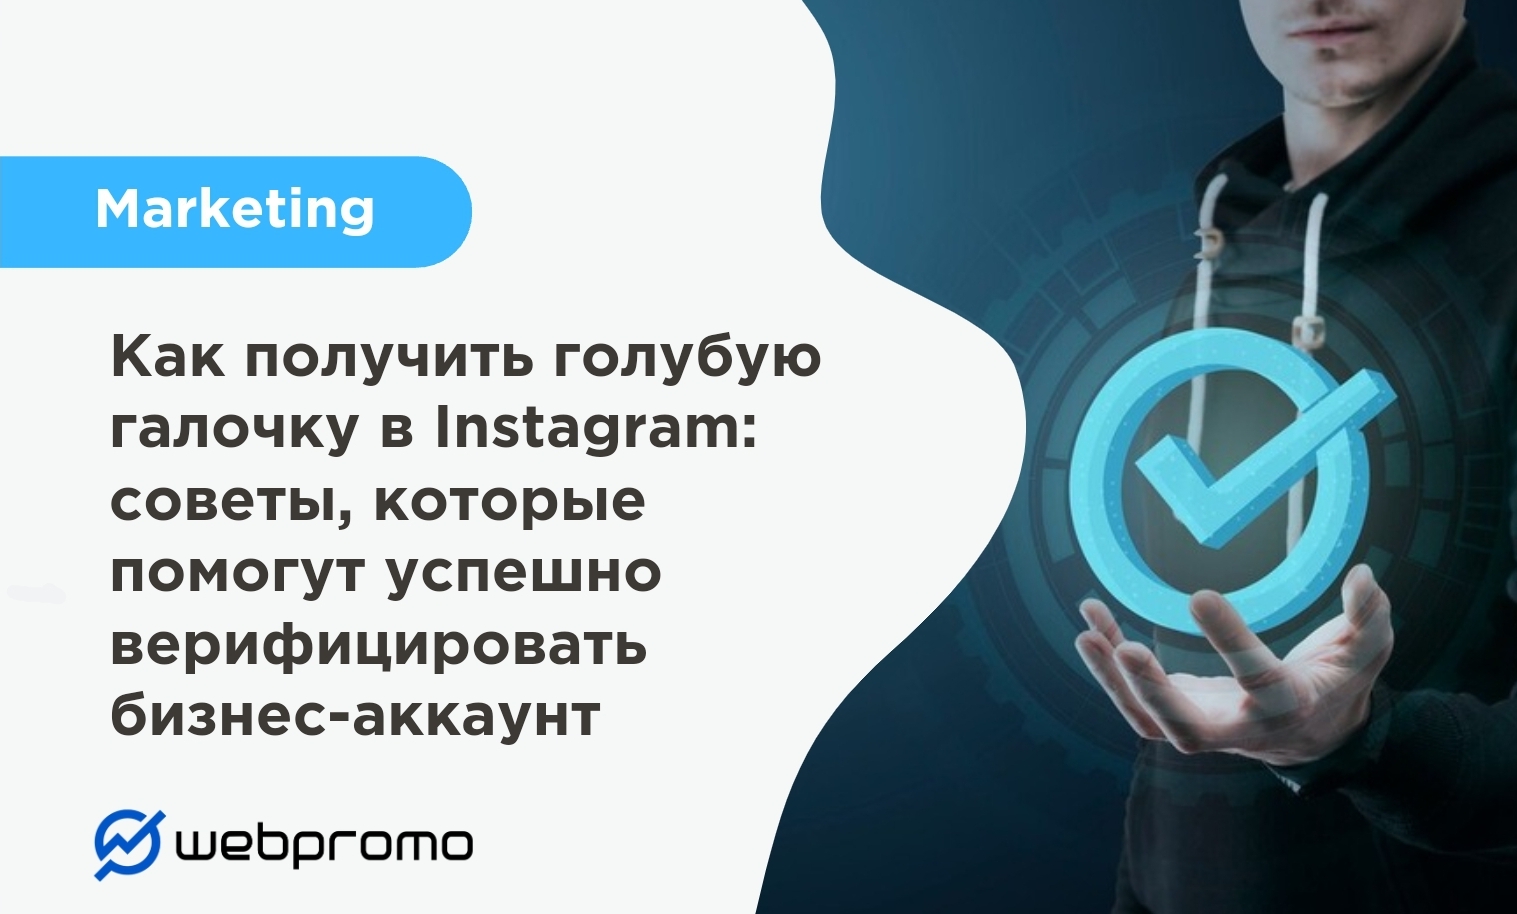 Как получить голубую галочку в Instagram: советы, которые помогут успешно верифицировать бизнес-аккаунт